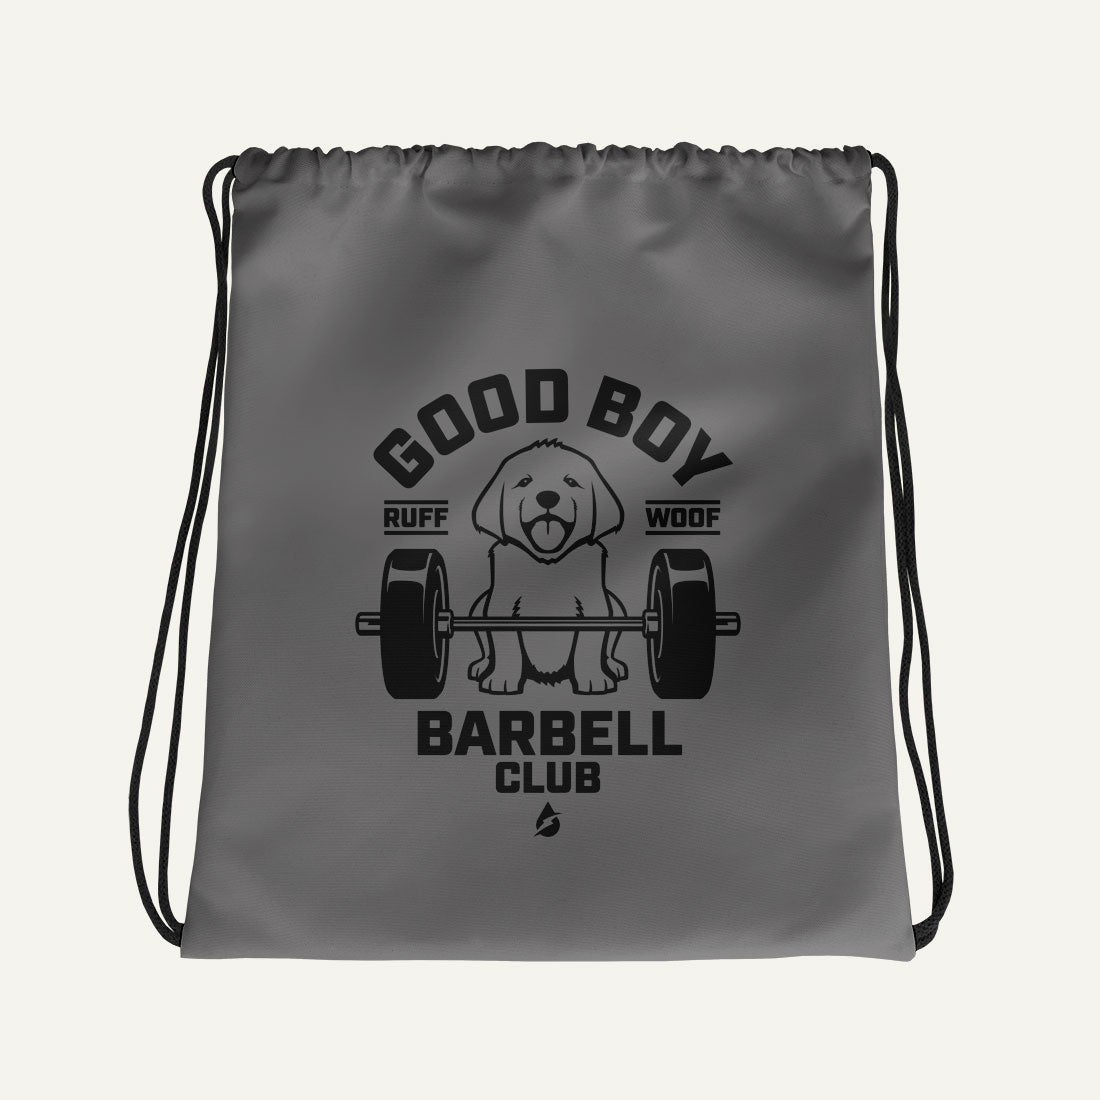 Good Boy Barbell Club Drawstring Bag